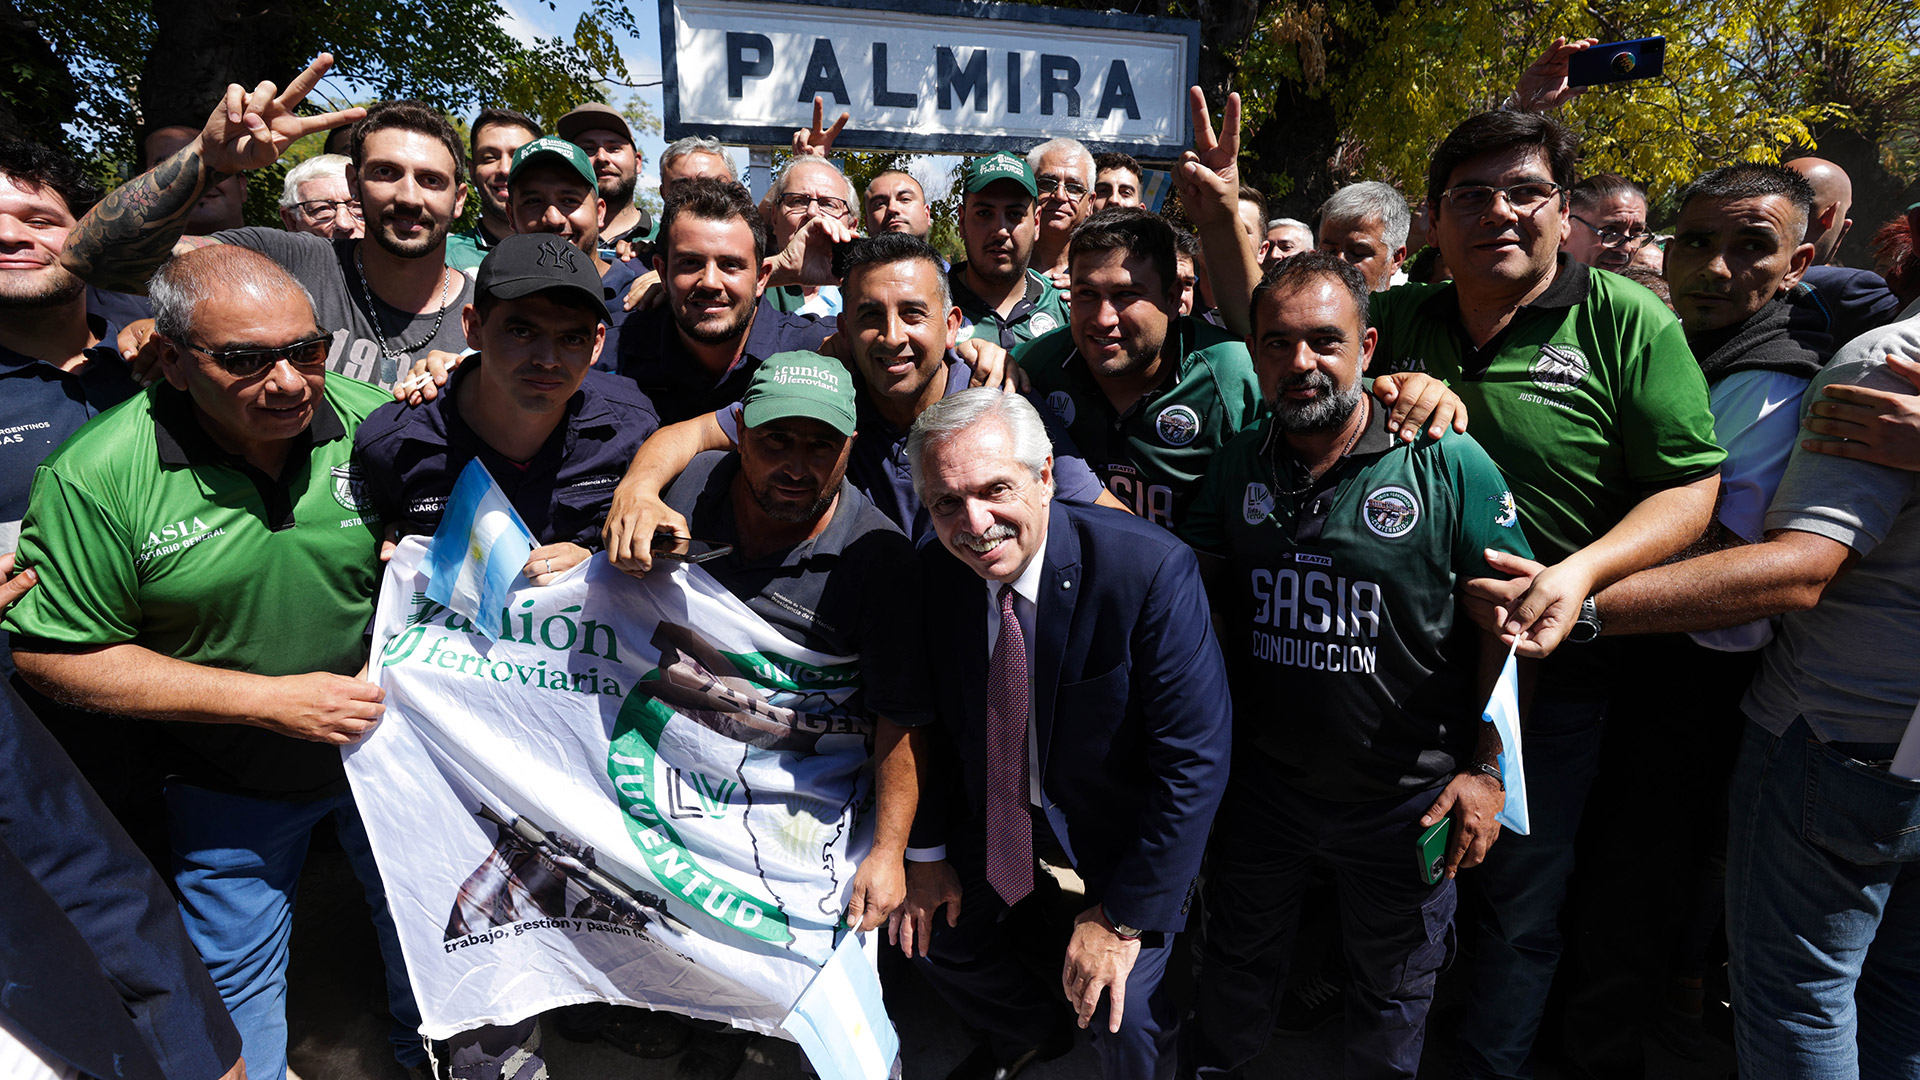 El presidente posó para la foto junto a trabajadores ferroviarios en la localidad de Palmira, Mendoza, hasta donde llegará un tren por semana desde y hacia Buenos Aires, después de 30 años.